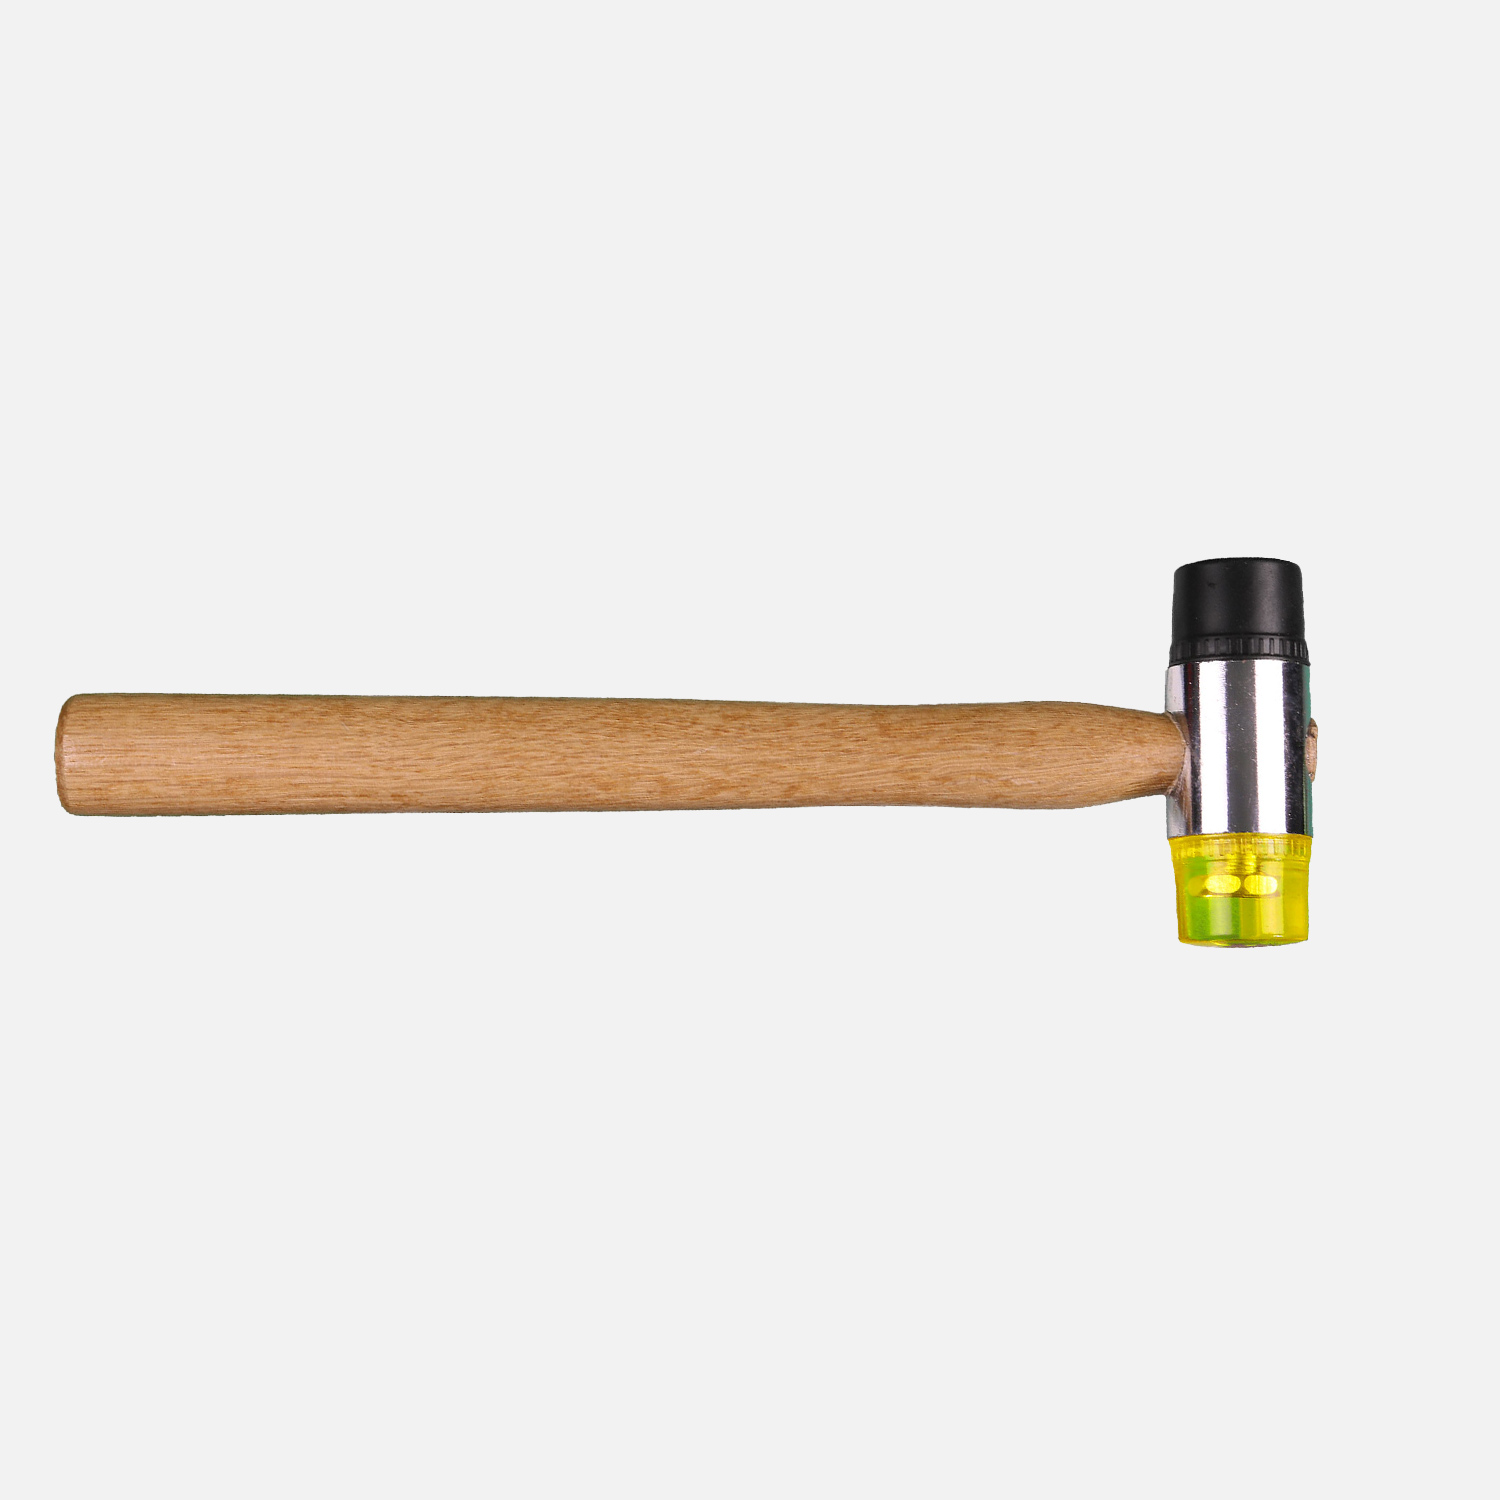 1 Kunststoffhammer, Schonhammer, 30 mm Kopfdurchm, Gummi/Kunststoff